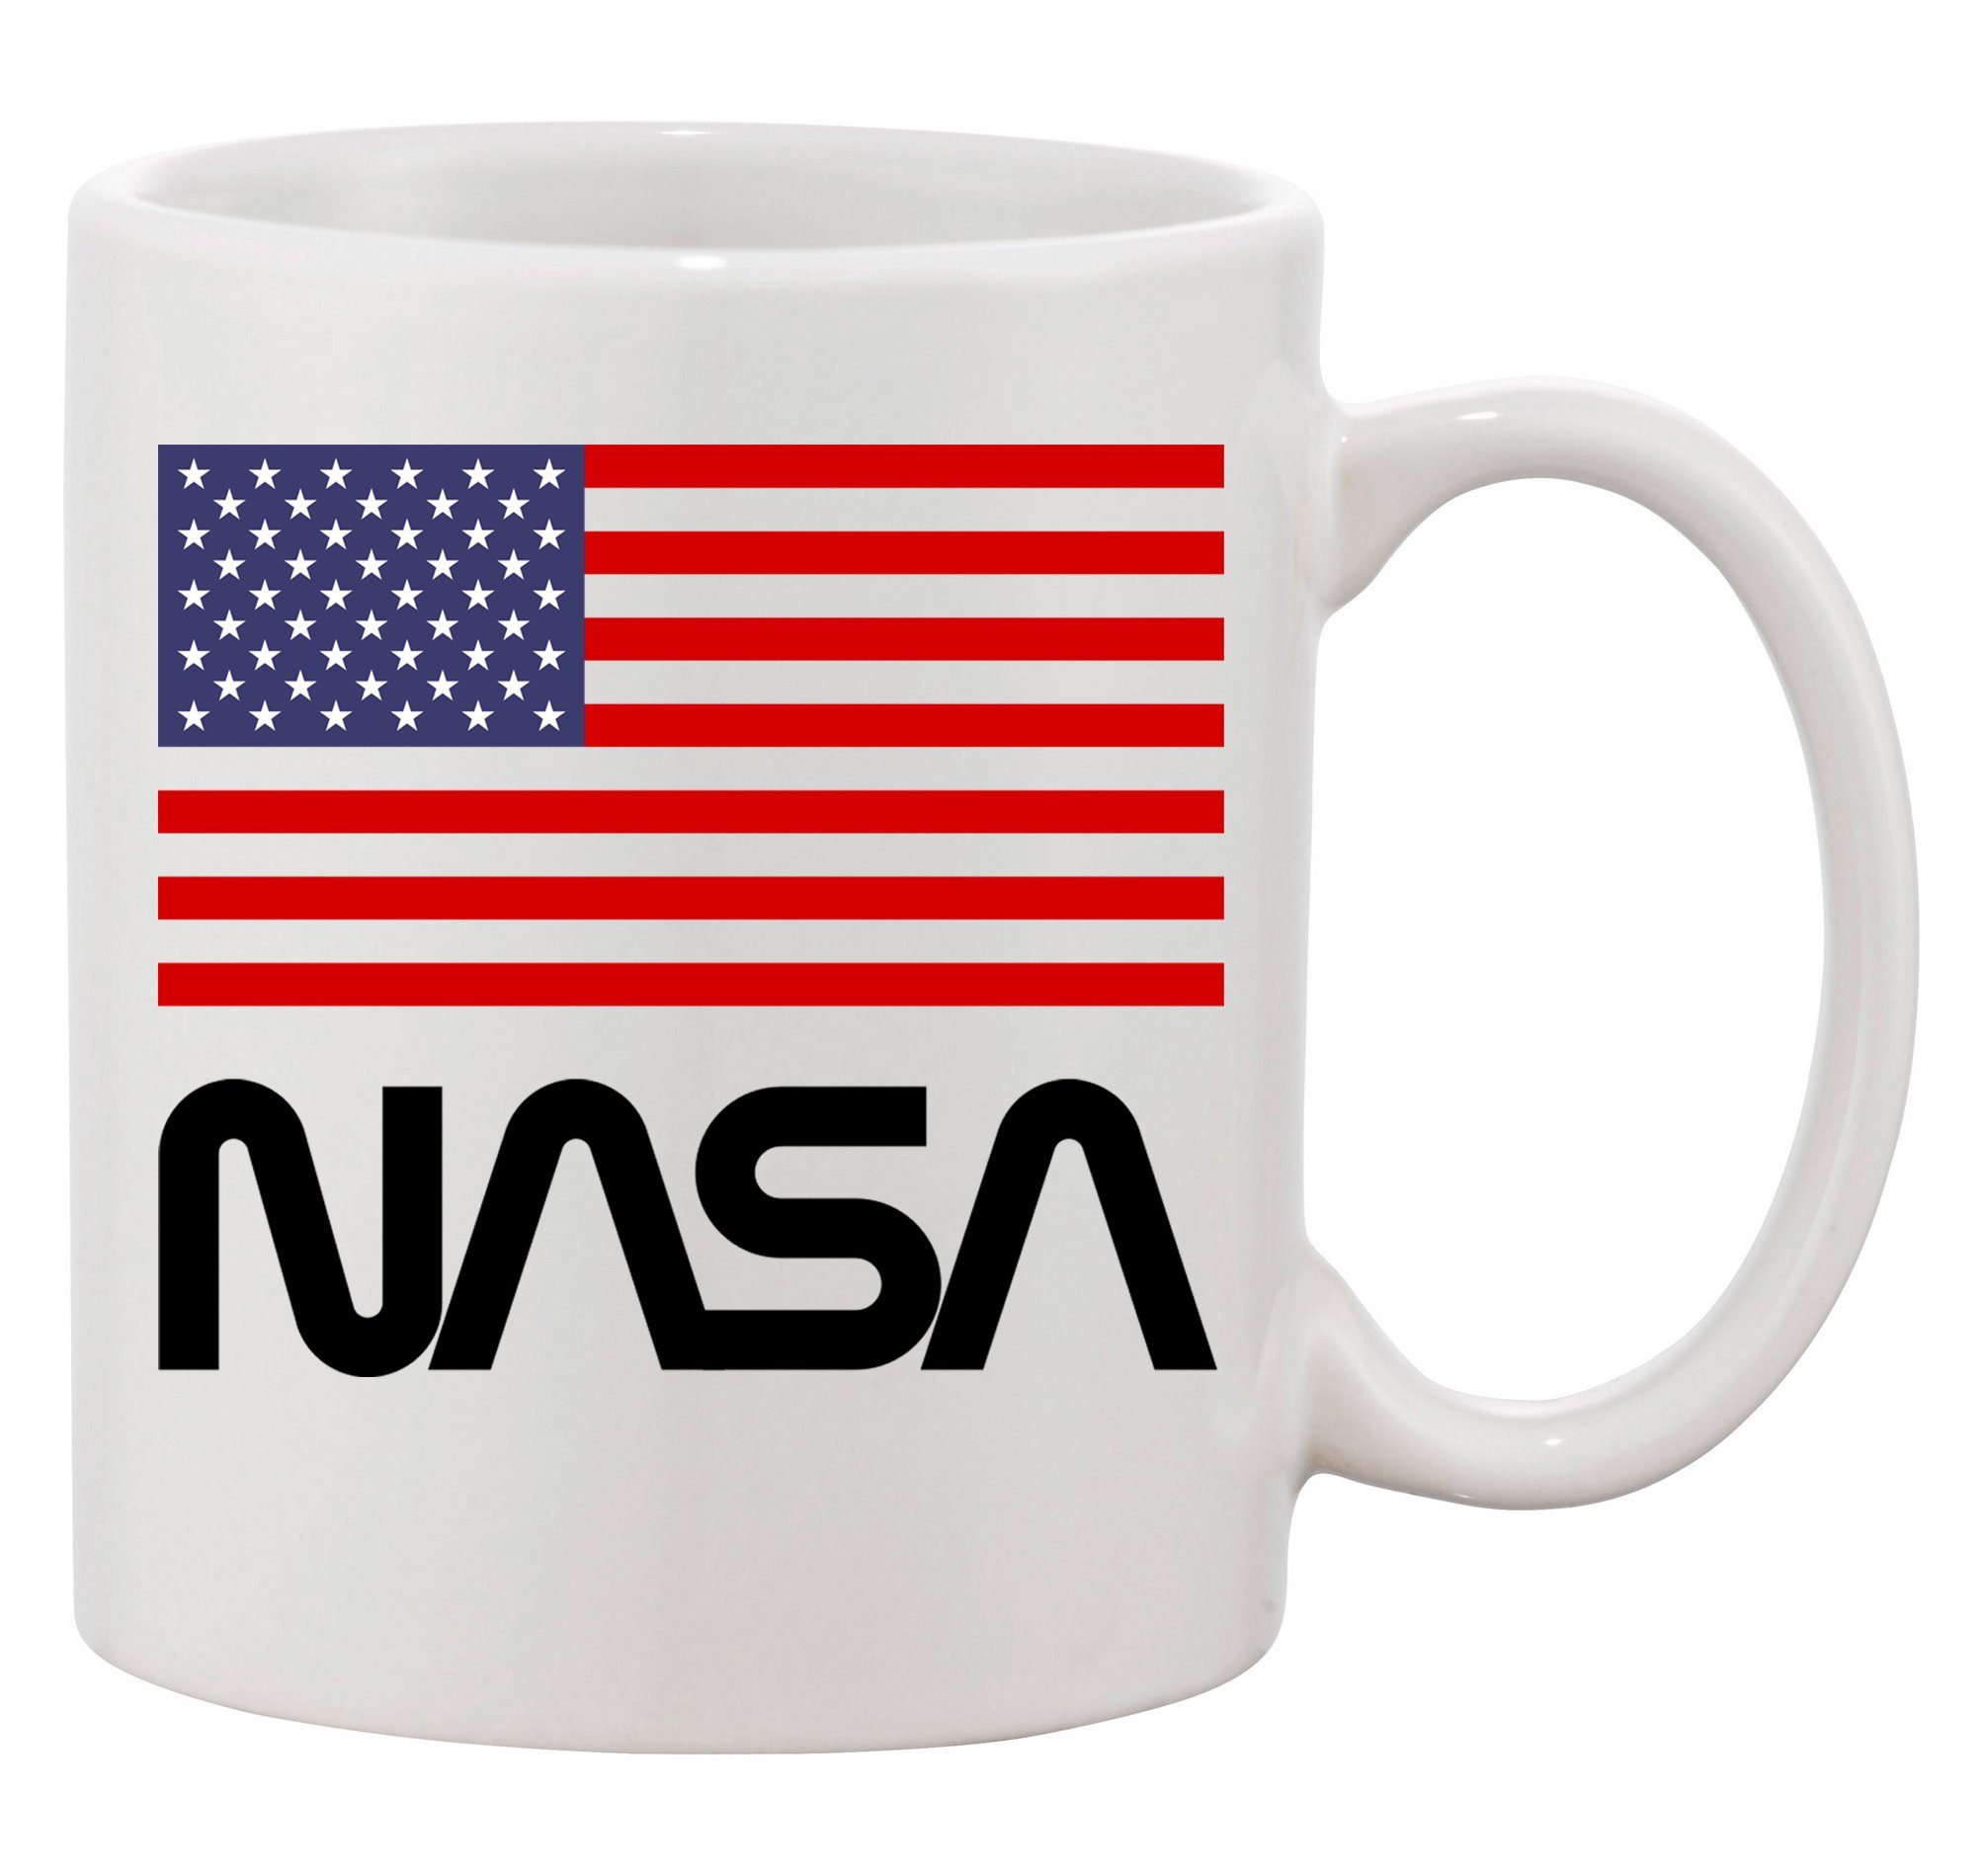 Blondie & Brownie Tasse Nasa USA Rakete Space Elon Mars mond Mission, Keramik, Spülmaschinenfest Weiß